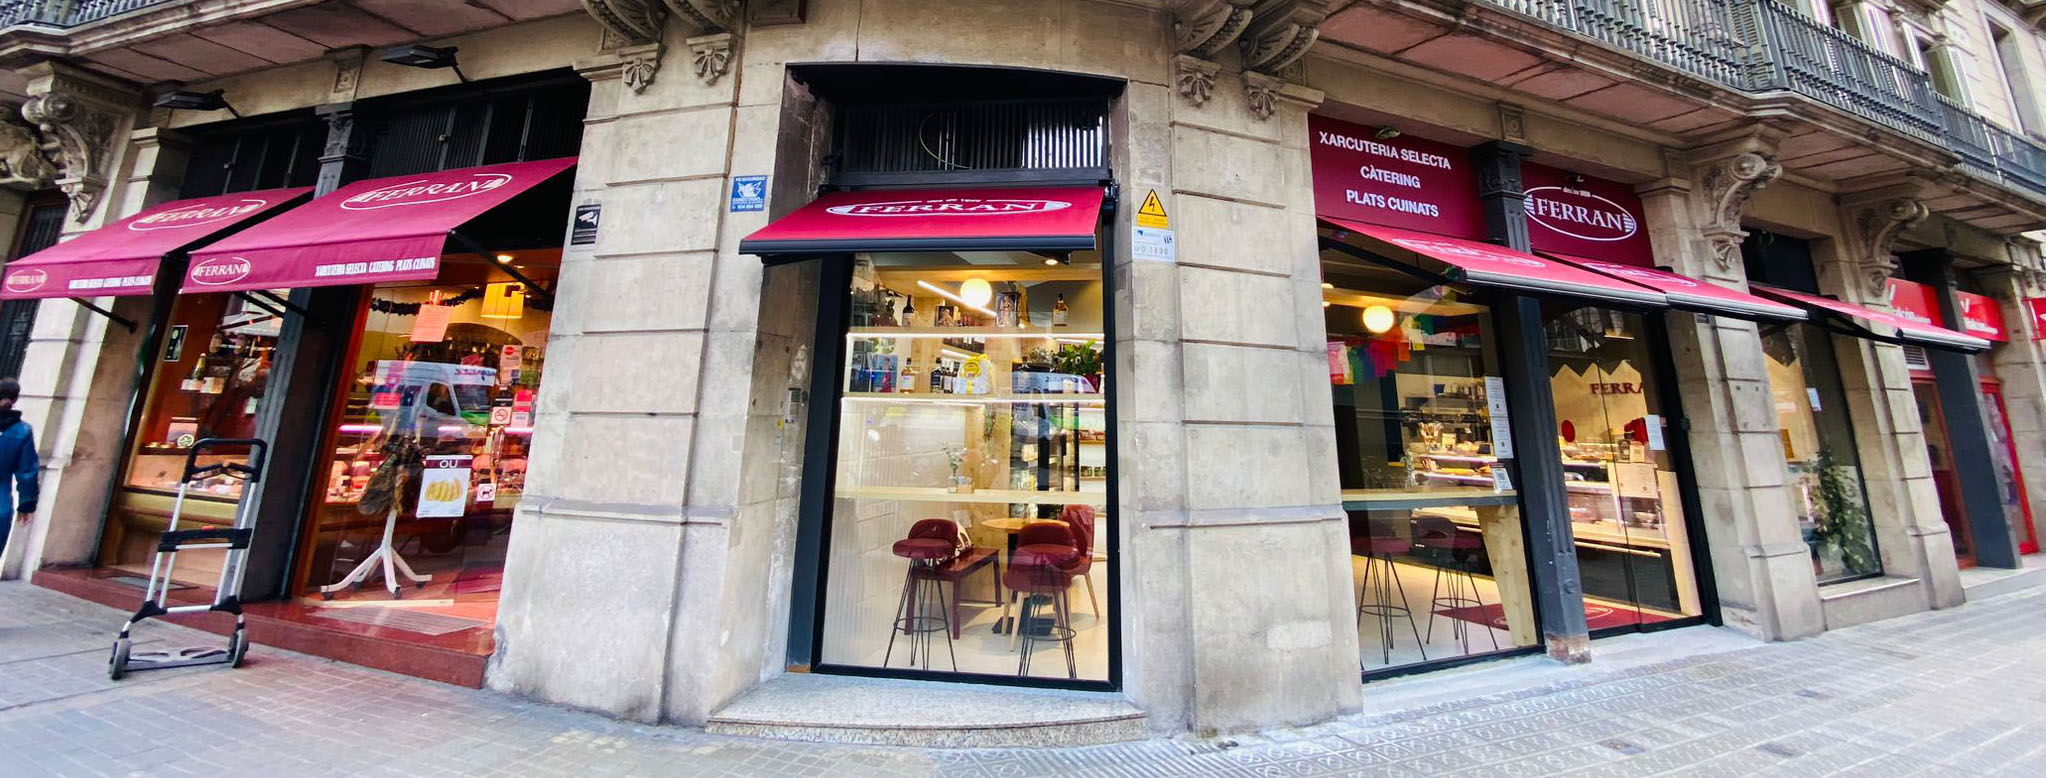 Xarcuteria Ferran abrió en Setiembre 2023 su nuevo local de degustación, justo al lado de la Xarcuteria Selecta en Pau Claris con Diputació en el centro de Barcelona